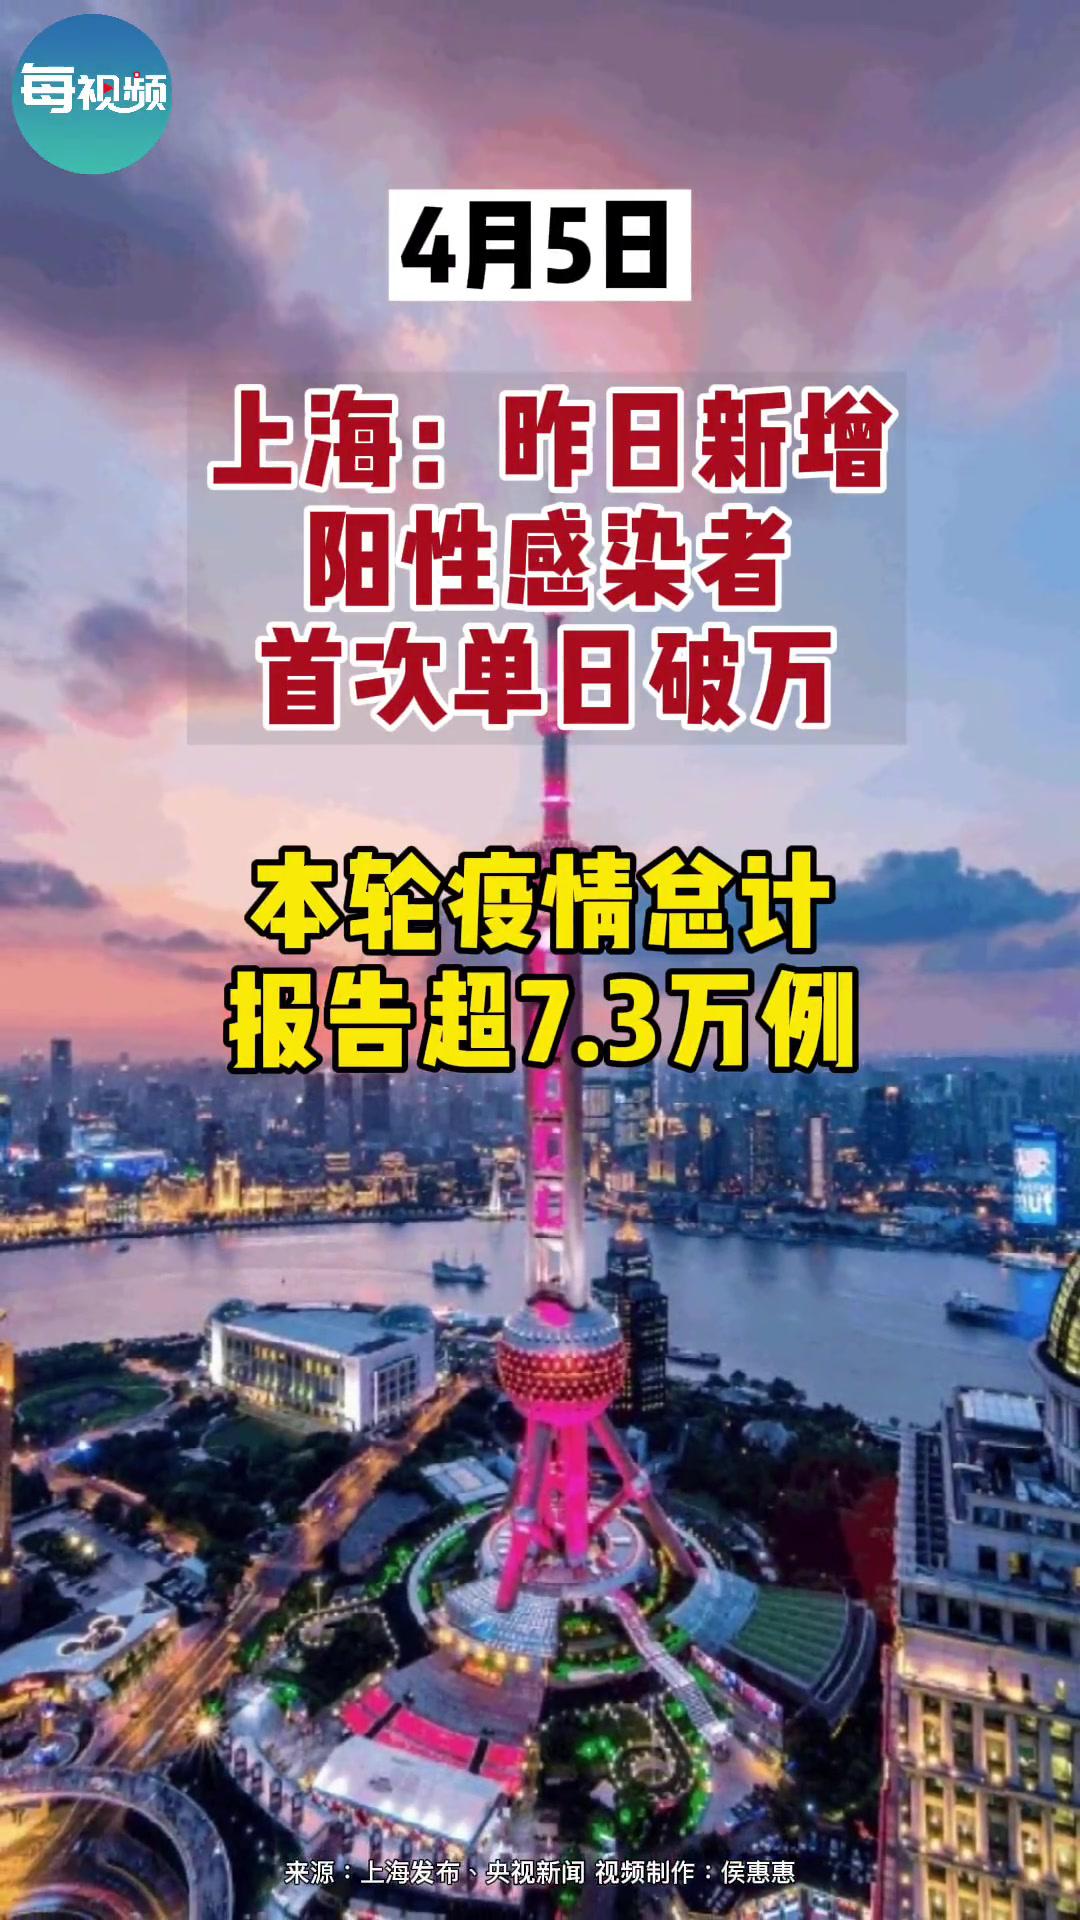 3万例 上海 上海疫情 新冠肺炎 最新消息 疫情